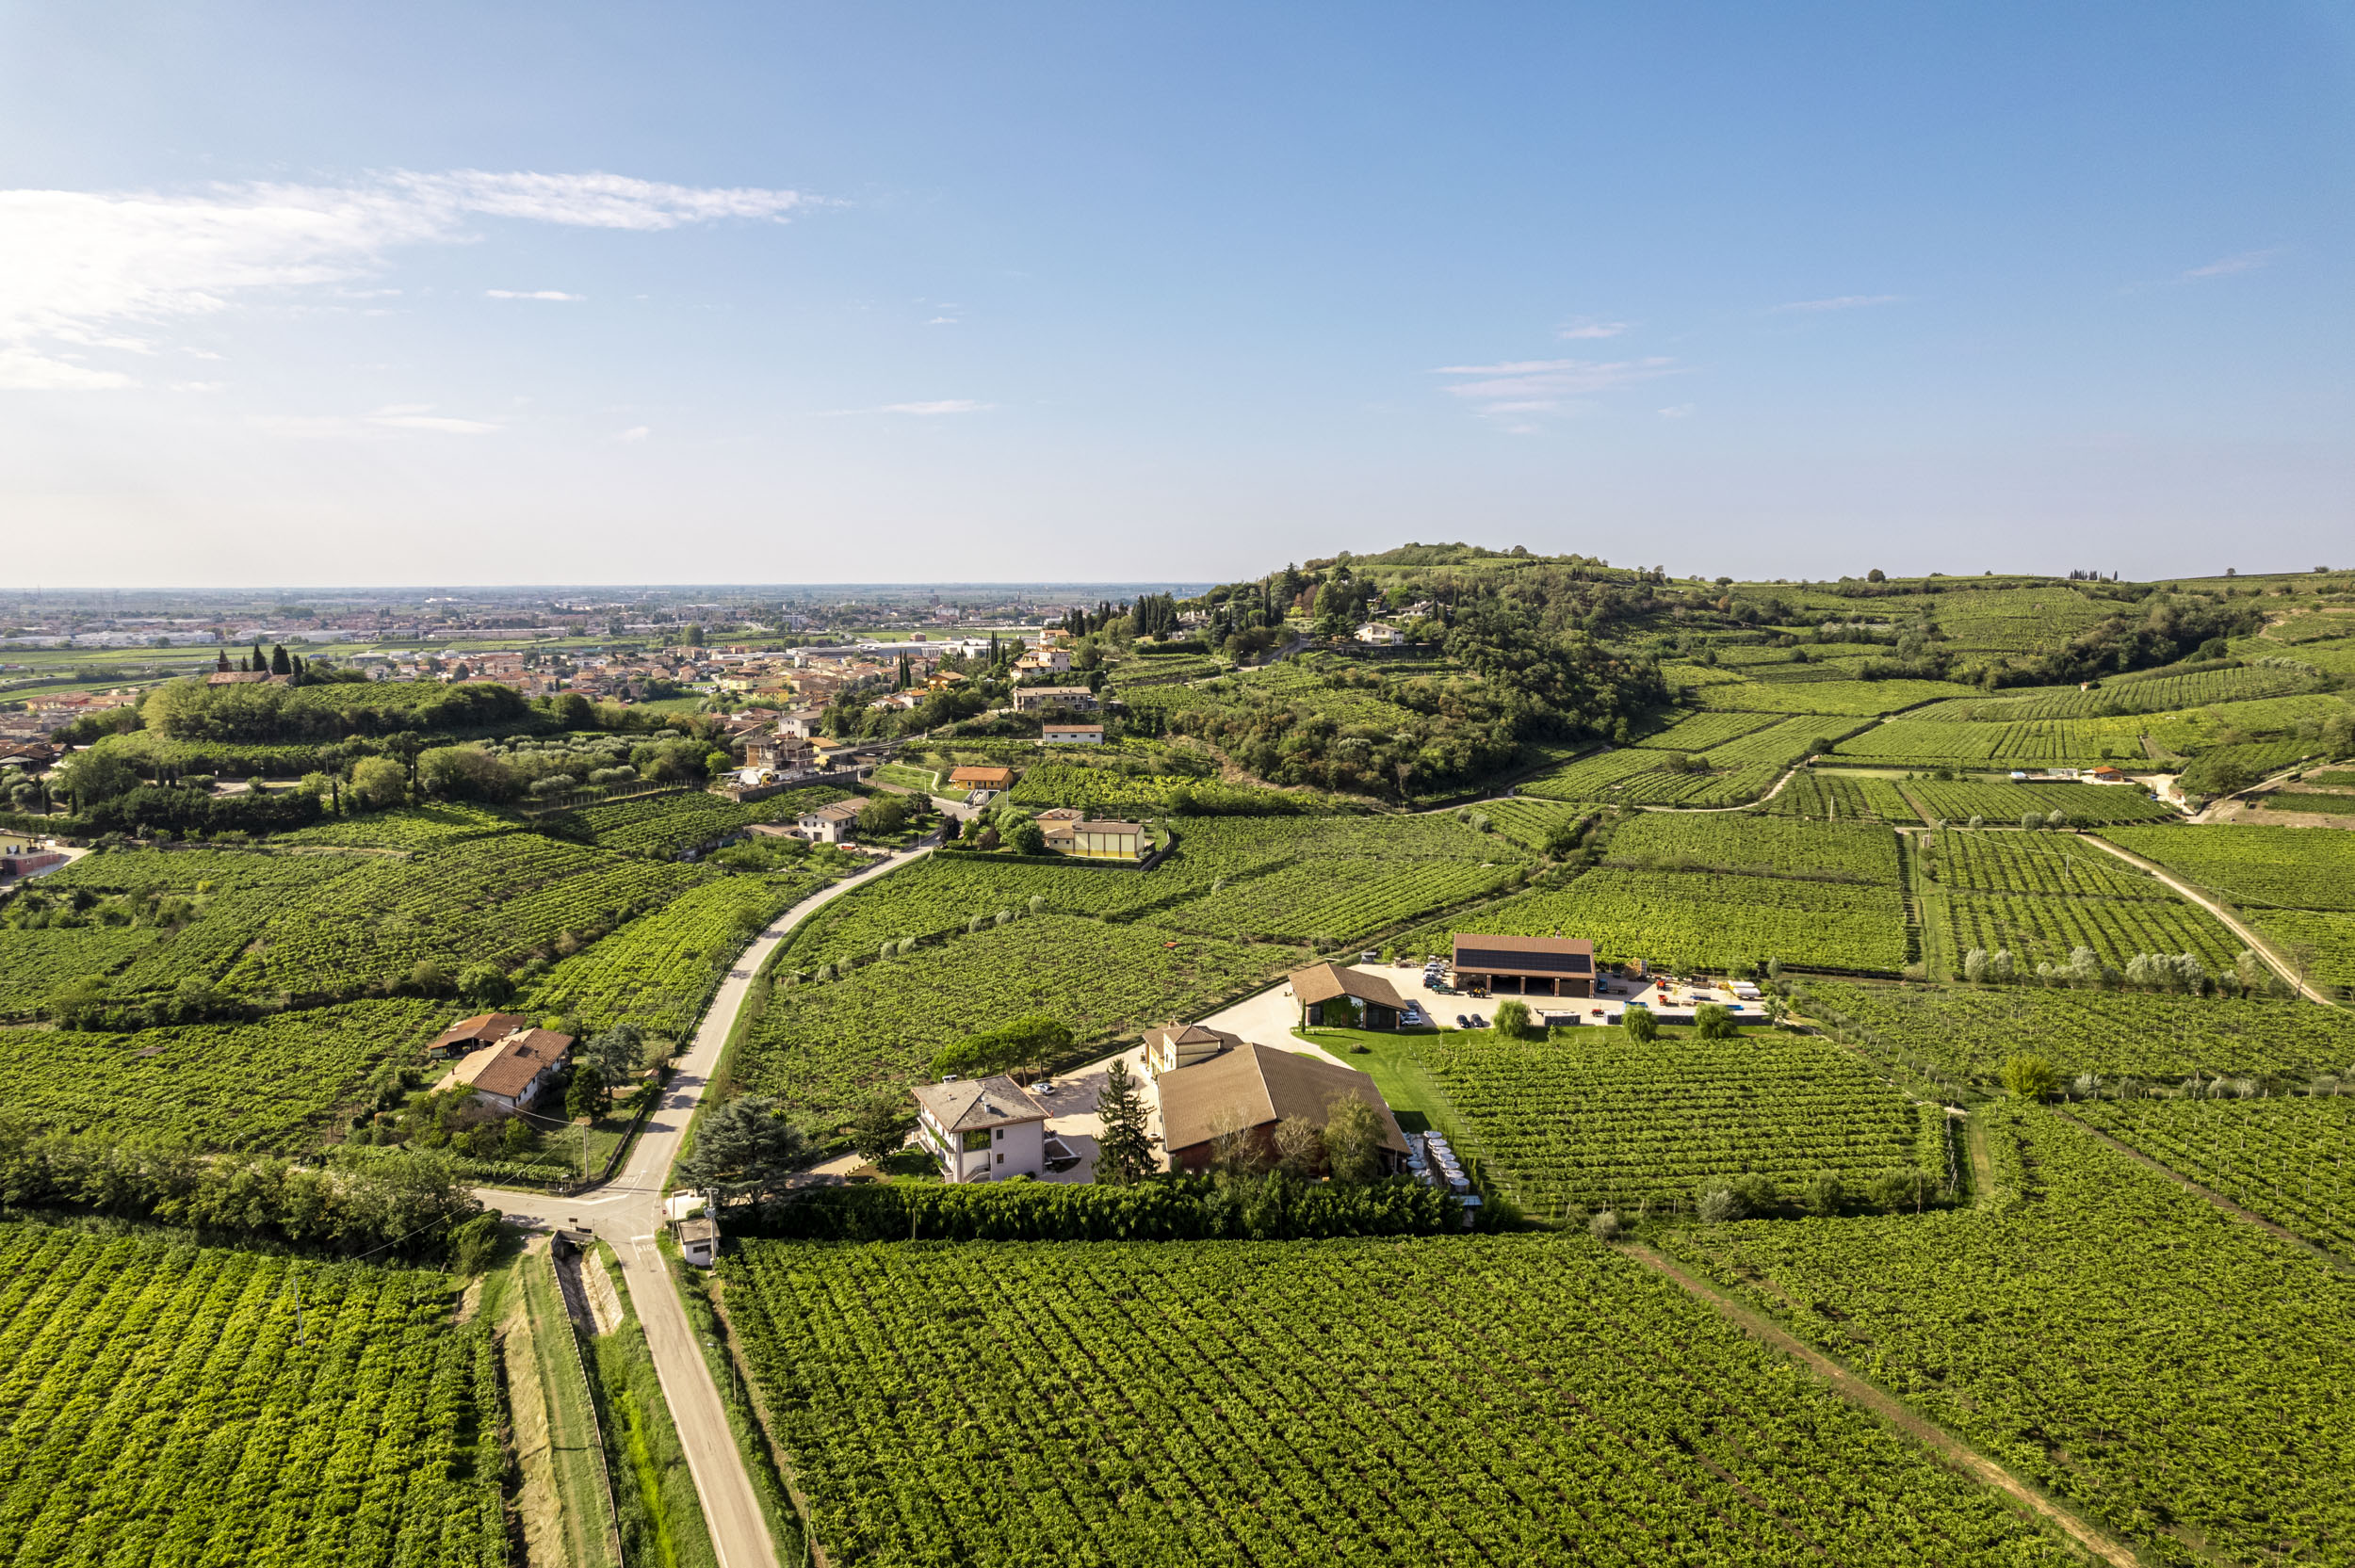 Qui prendono vita i suoi vini, dai vigneti allevati tra le colline del Soave e della Valpolicella, foto da comunicato stampa